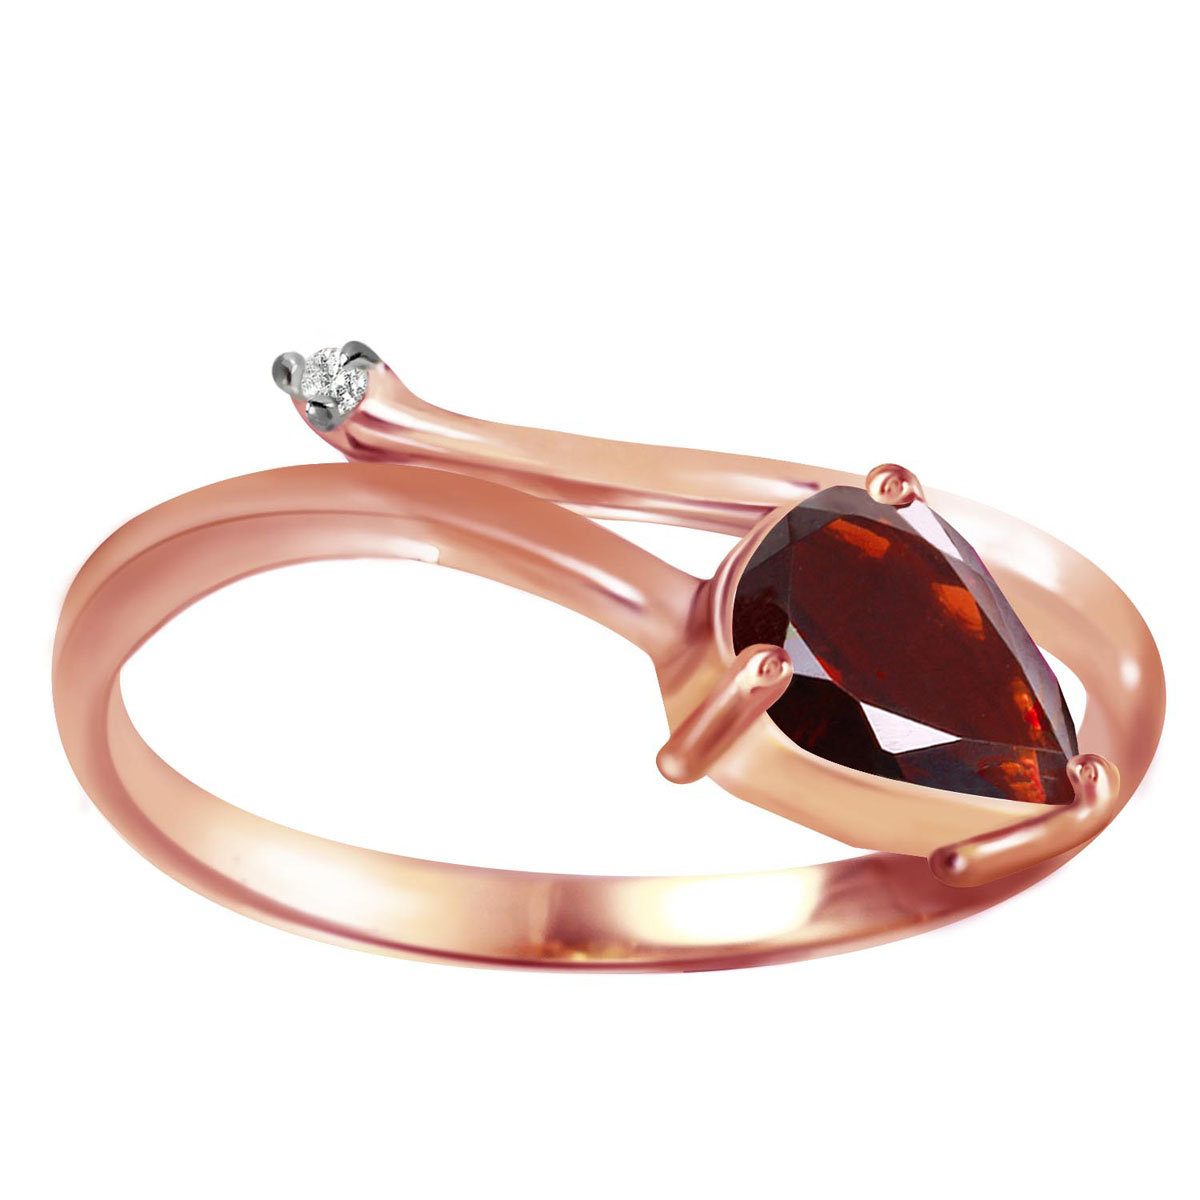 Garnet & Diamond Top & Tail Ring in 18ct Rose Gold